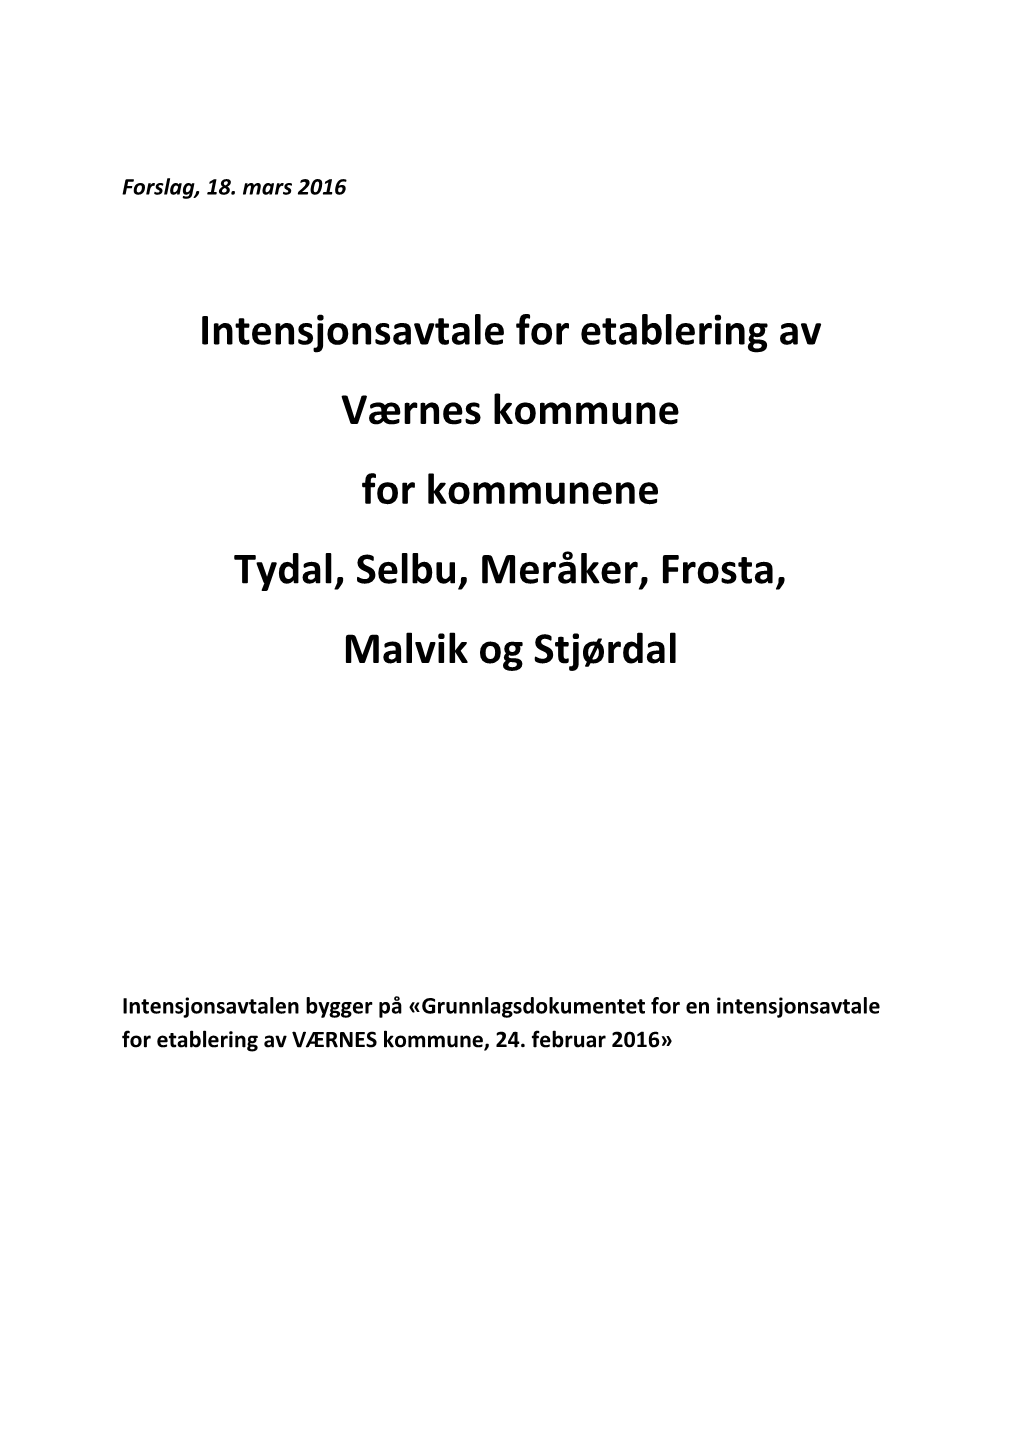 Tydal, Selbu, Meråker, Frosta, Malvik Og Stjørdal